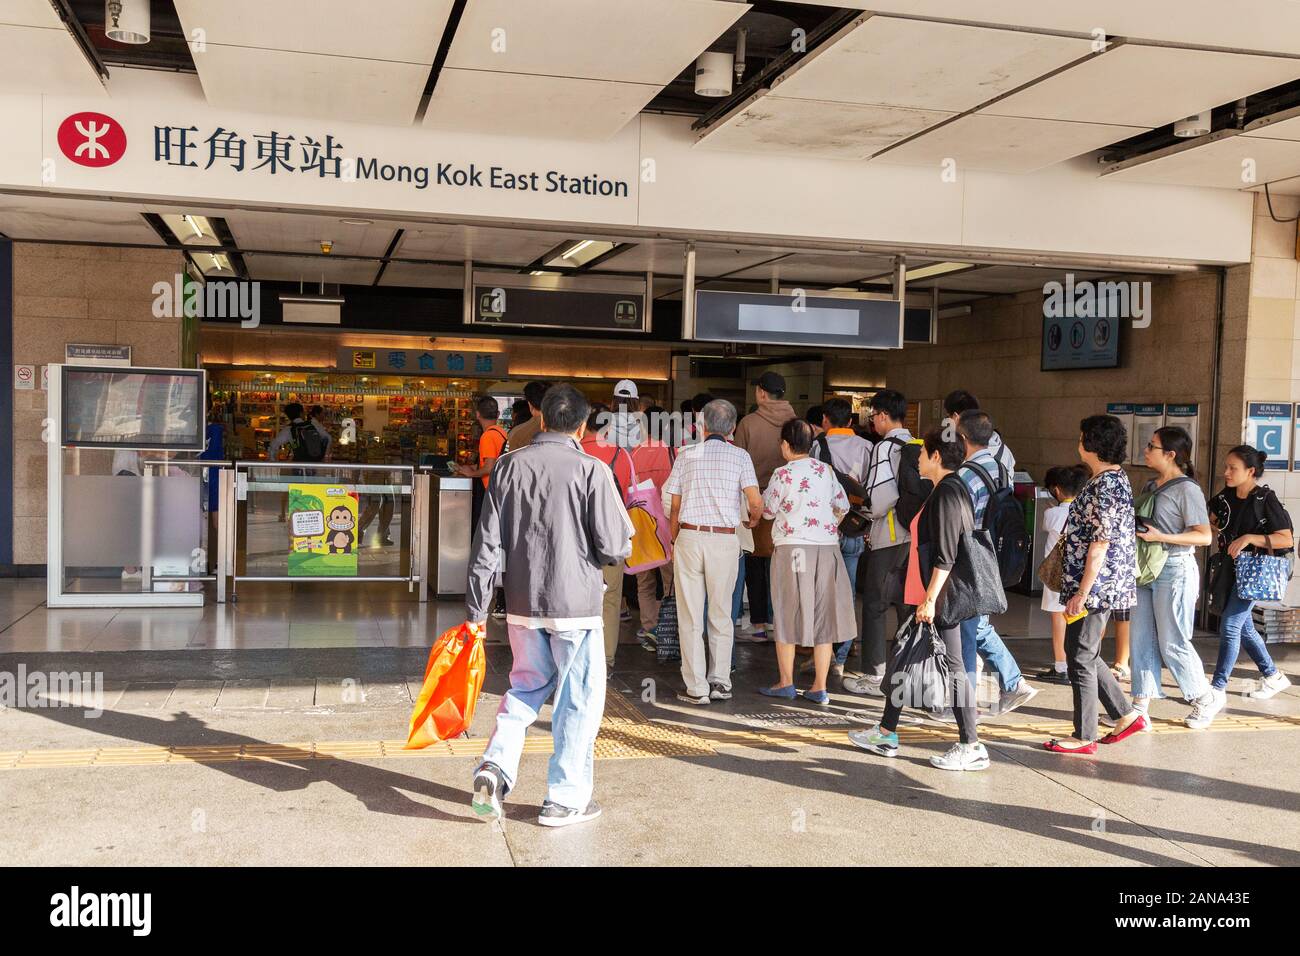 Trasporti pubblici di Hong Kong - persone che entrano nella stazione di Mong Kok East, per viaggiare sulla MTR di Hong Kong (ferrovia di transito di massa); Kowloon Hong Kong Asia Foto Stock